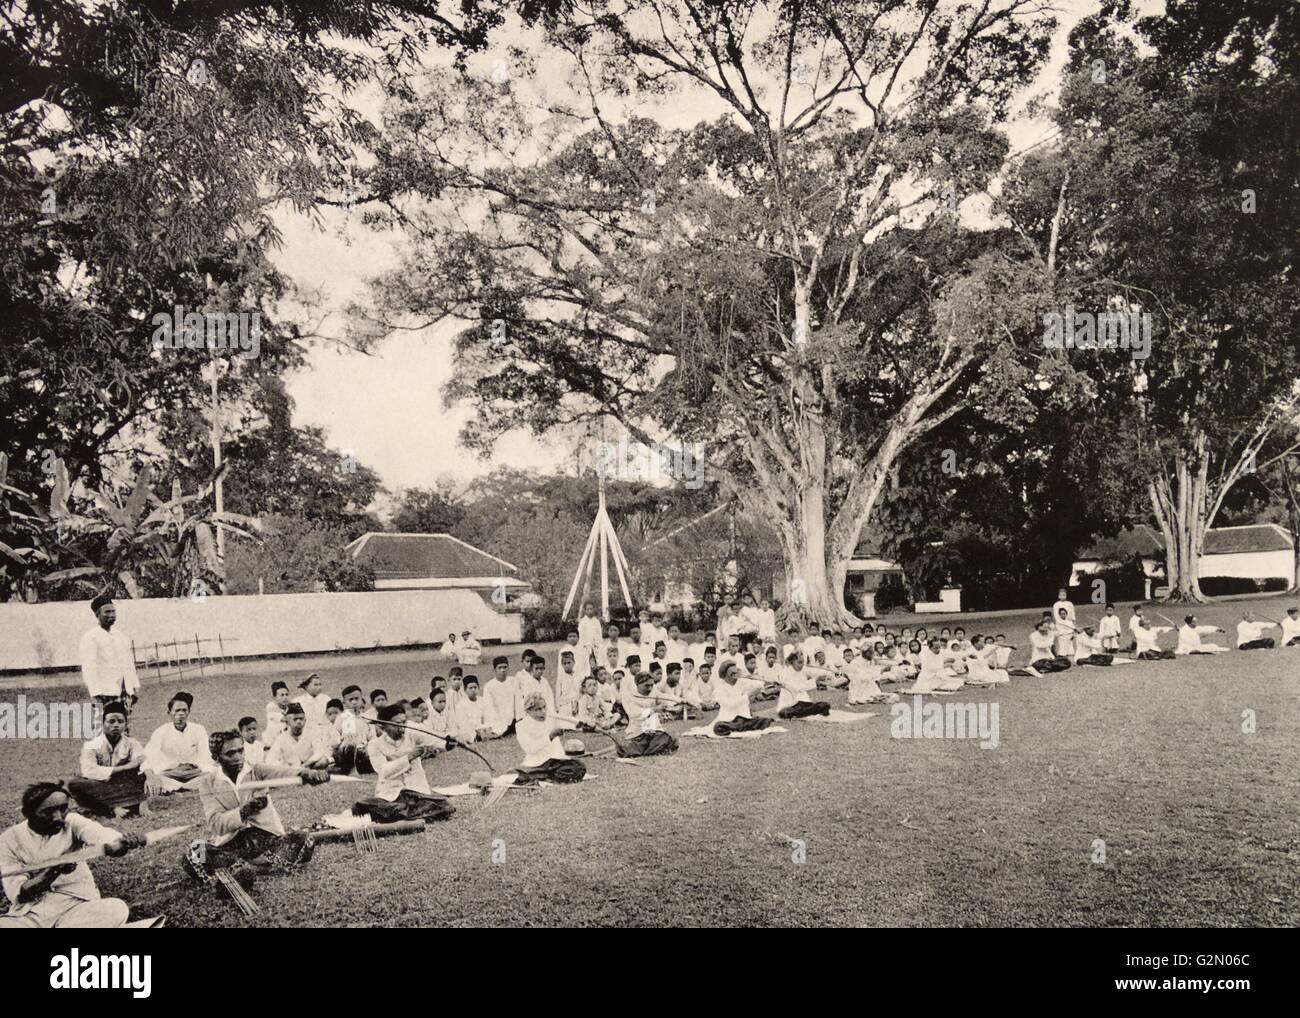 La fotografia mostra un gruppo di abitanti di essere insegnato come la caccia con arco e frecce. Le Indie orientali olandesi, noto come Indonesia moderna. Datata c1935. Foto Stock